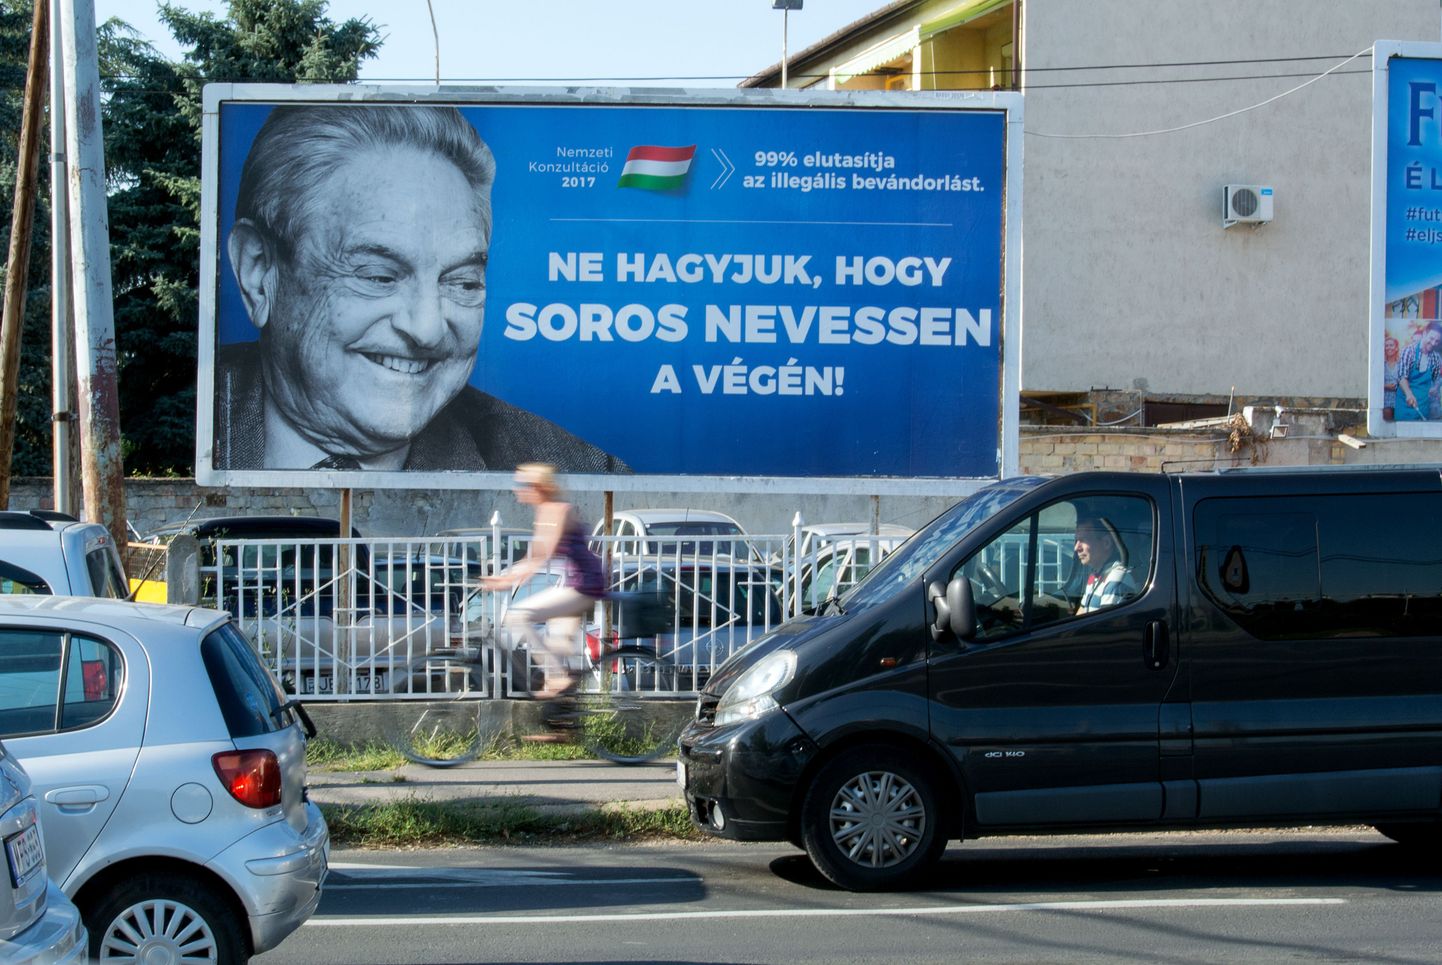 George Sorose vastased plakat Ungaris.